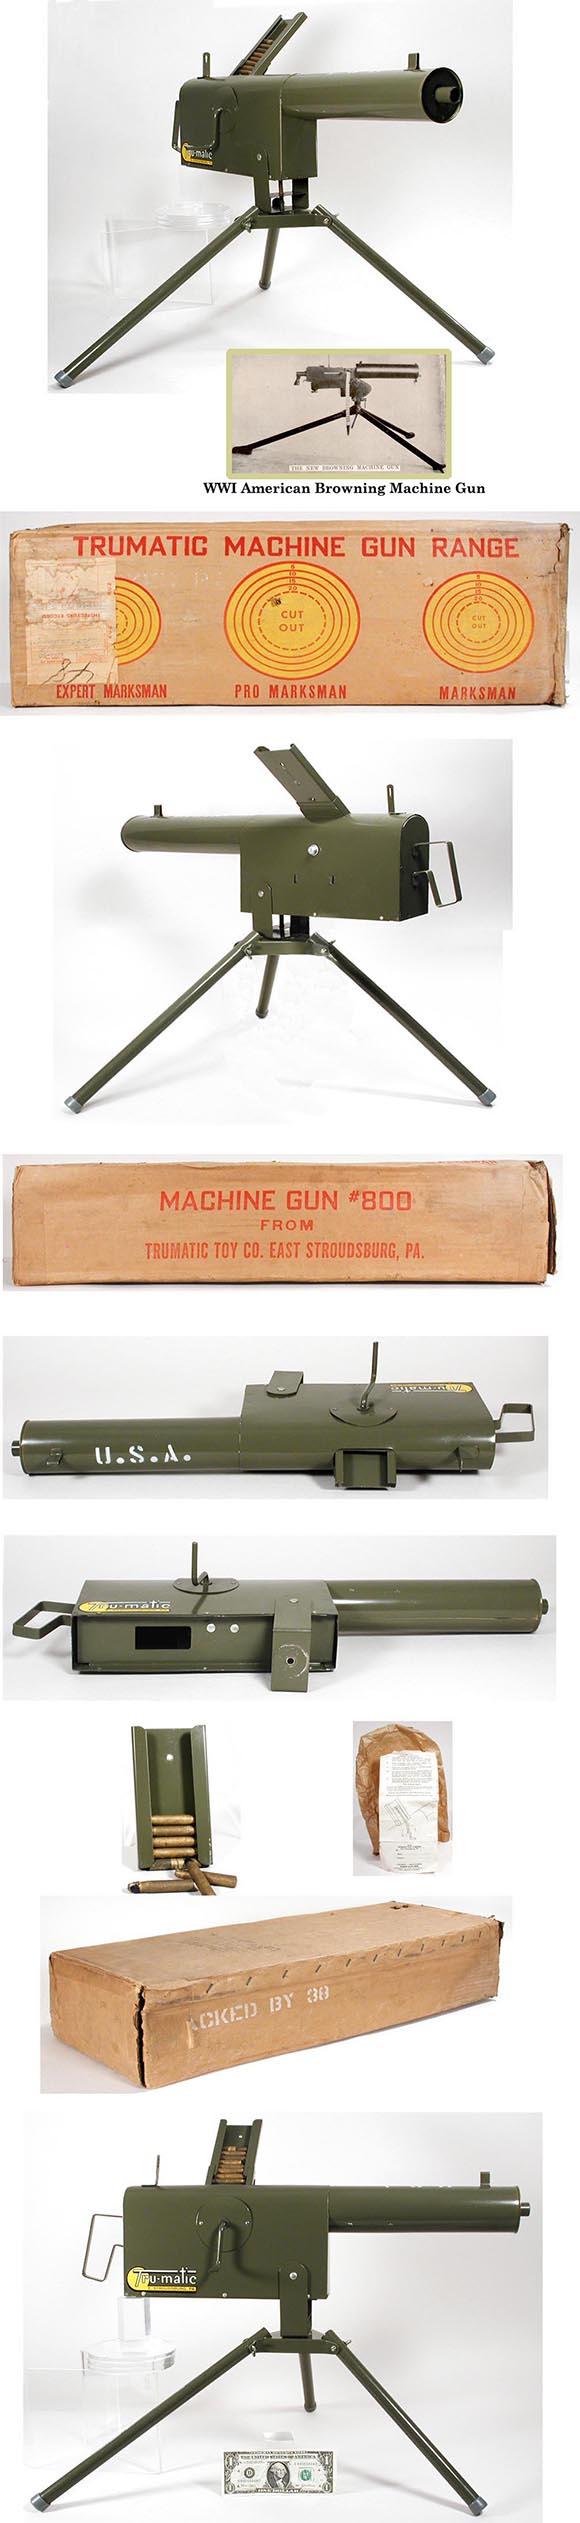 1953 Tru-Matic, No. 800 Machine Gun in Original Box